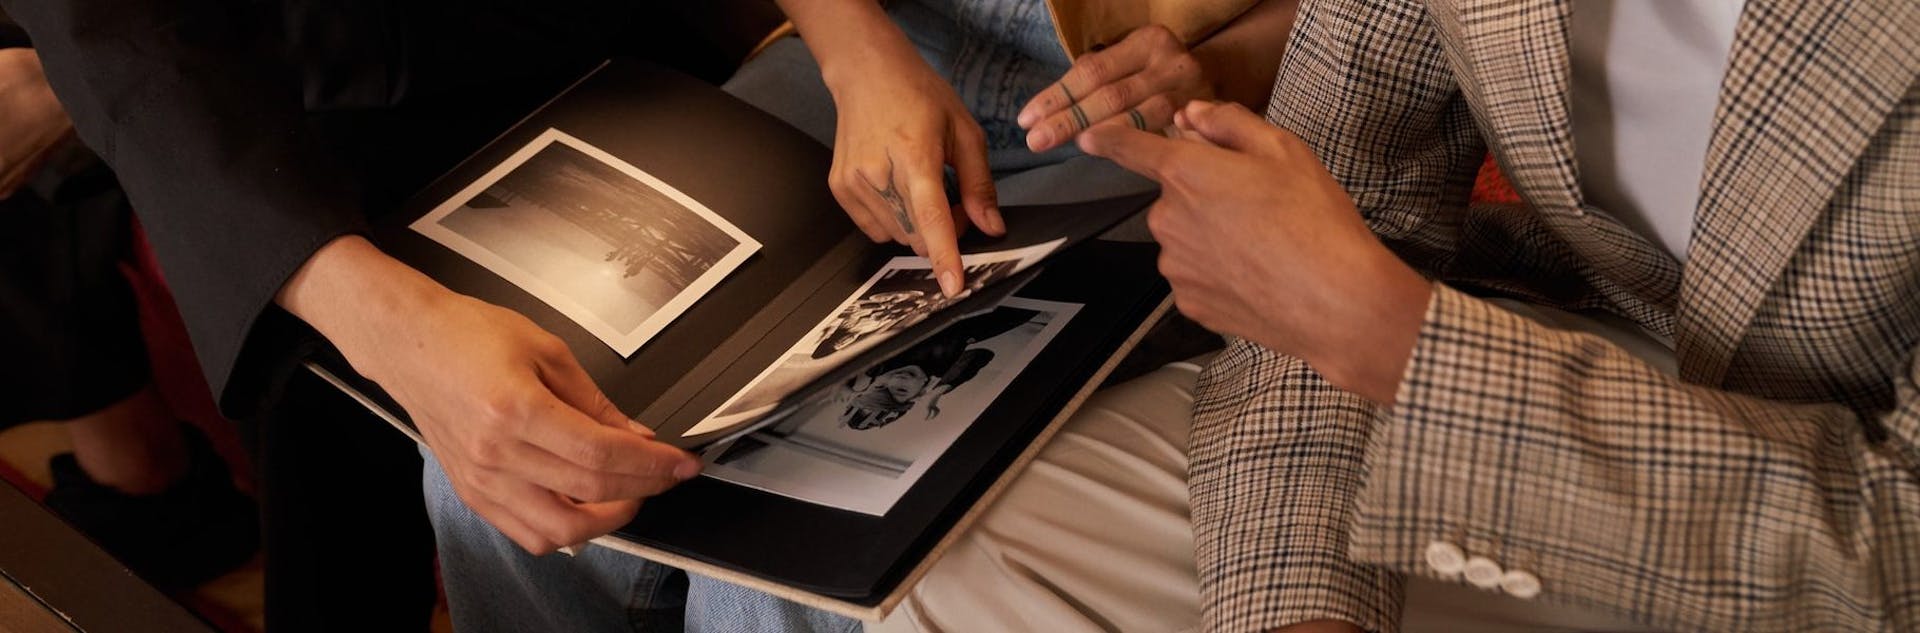 ¿Cómo hacer un libro de fotos? Las mejores estrategias para guardar tus recuerdos más bonitos